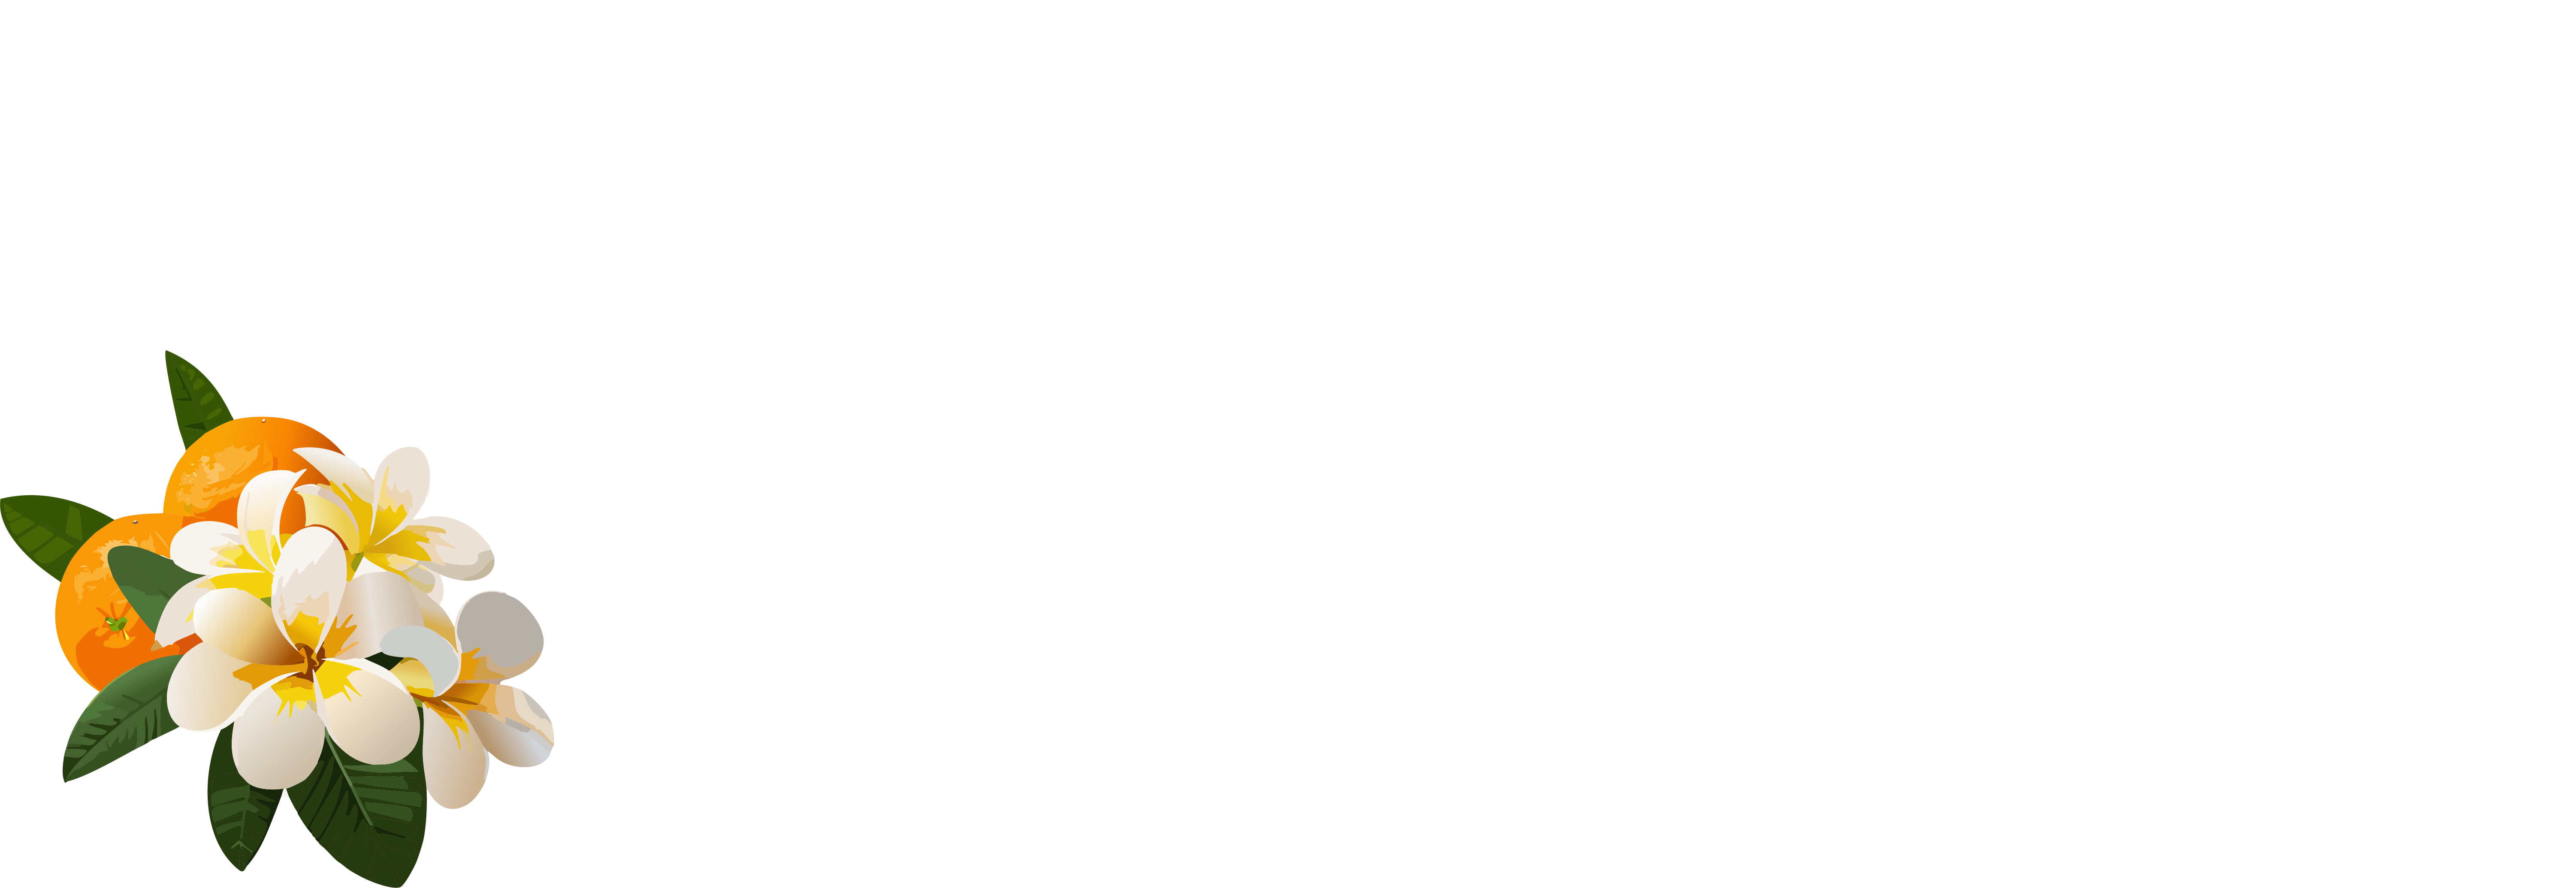 Emmerson-Bartlett Memorial Chapel Logo